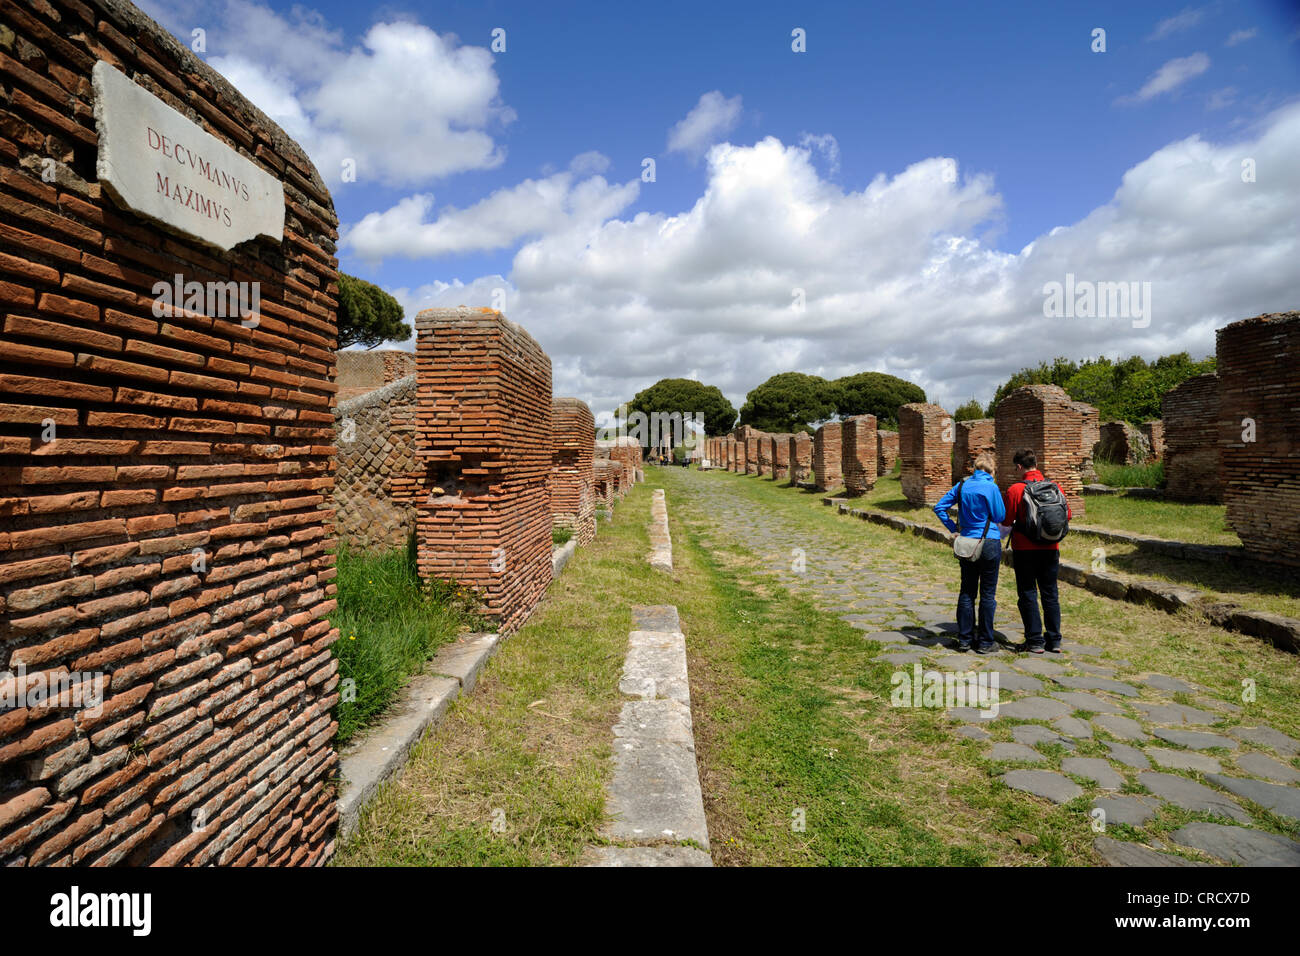 Italy, Rome, Ostia Antica, decumanus maximus, roman road, tourists Stock Photo